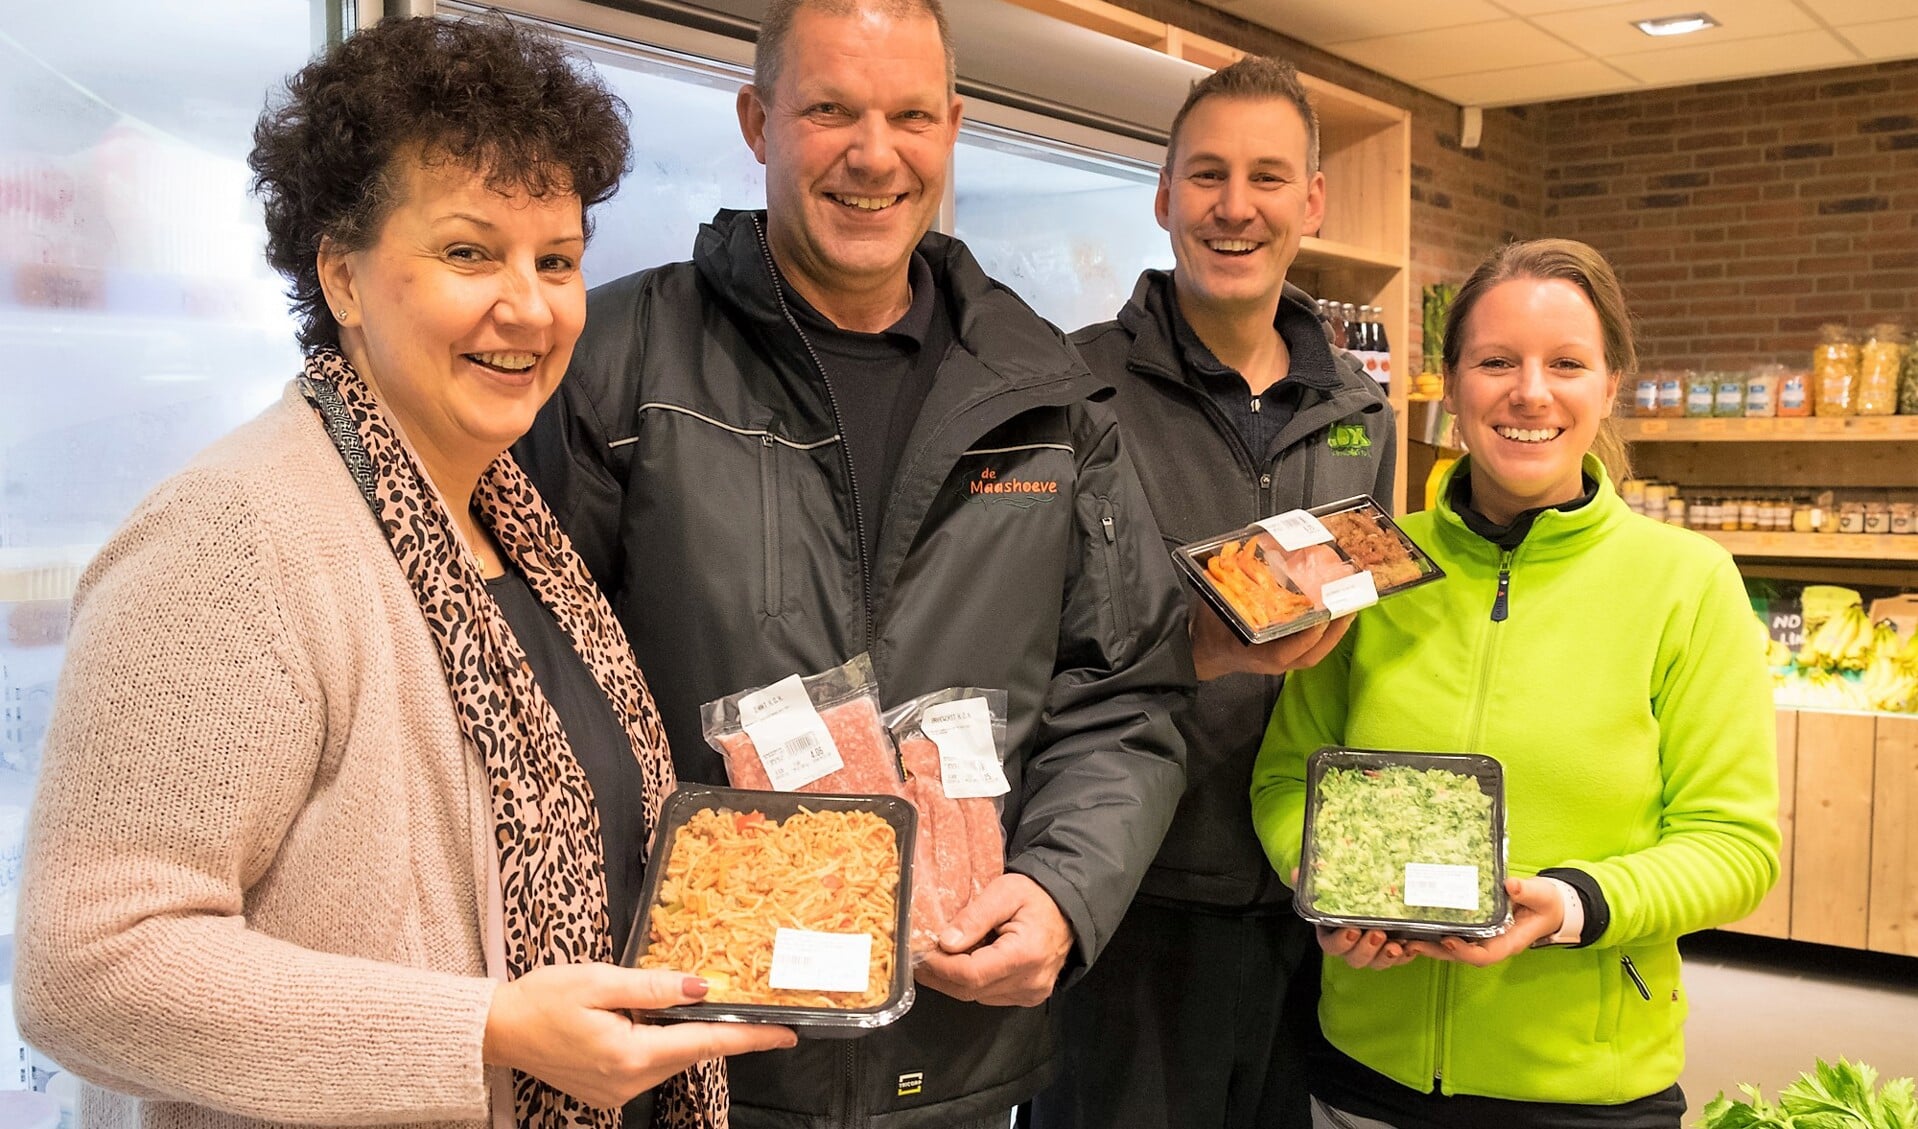 Carla en Jan van den Bosch (vlnr)  leggen al hun Maashoeve-producten te koop bij Chris Cox Groente & Fruit van Jamie en Natascha Cox. Foto en tekst: Patricia de Ryck